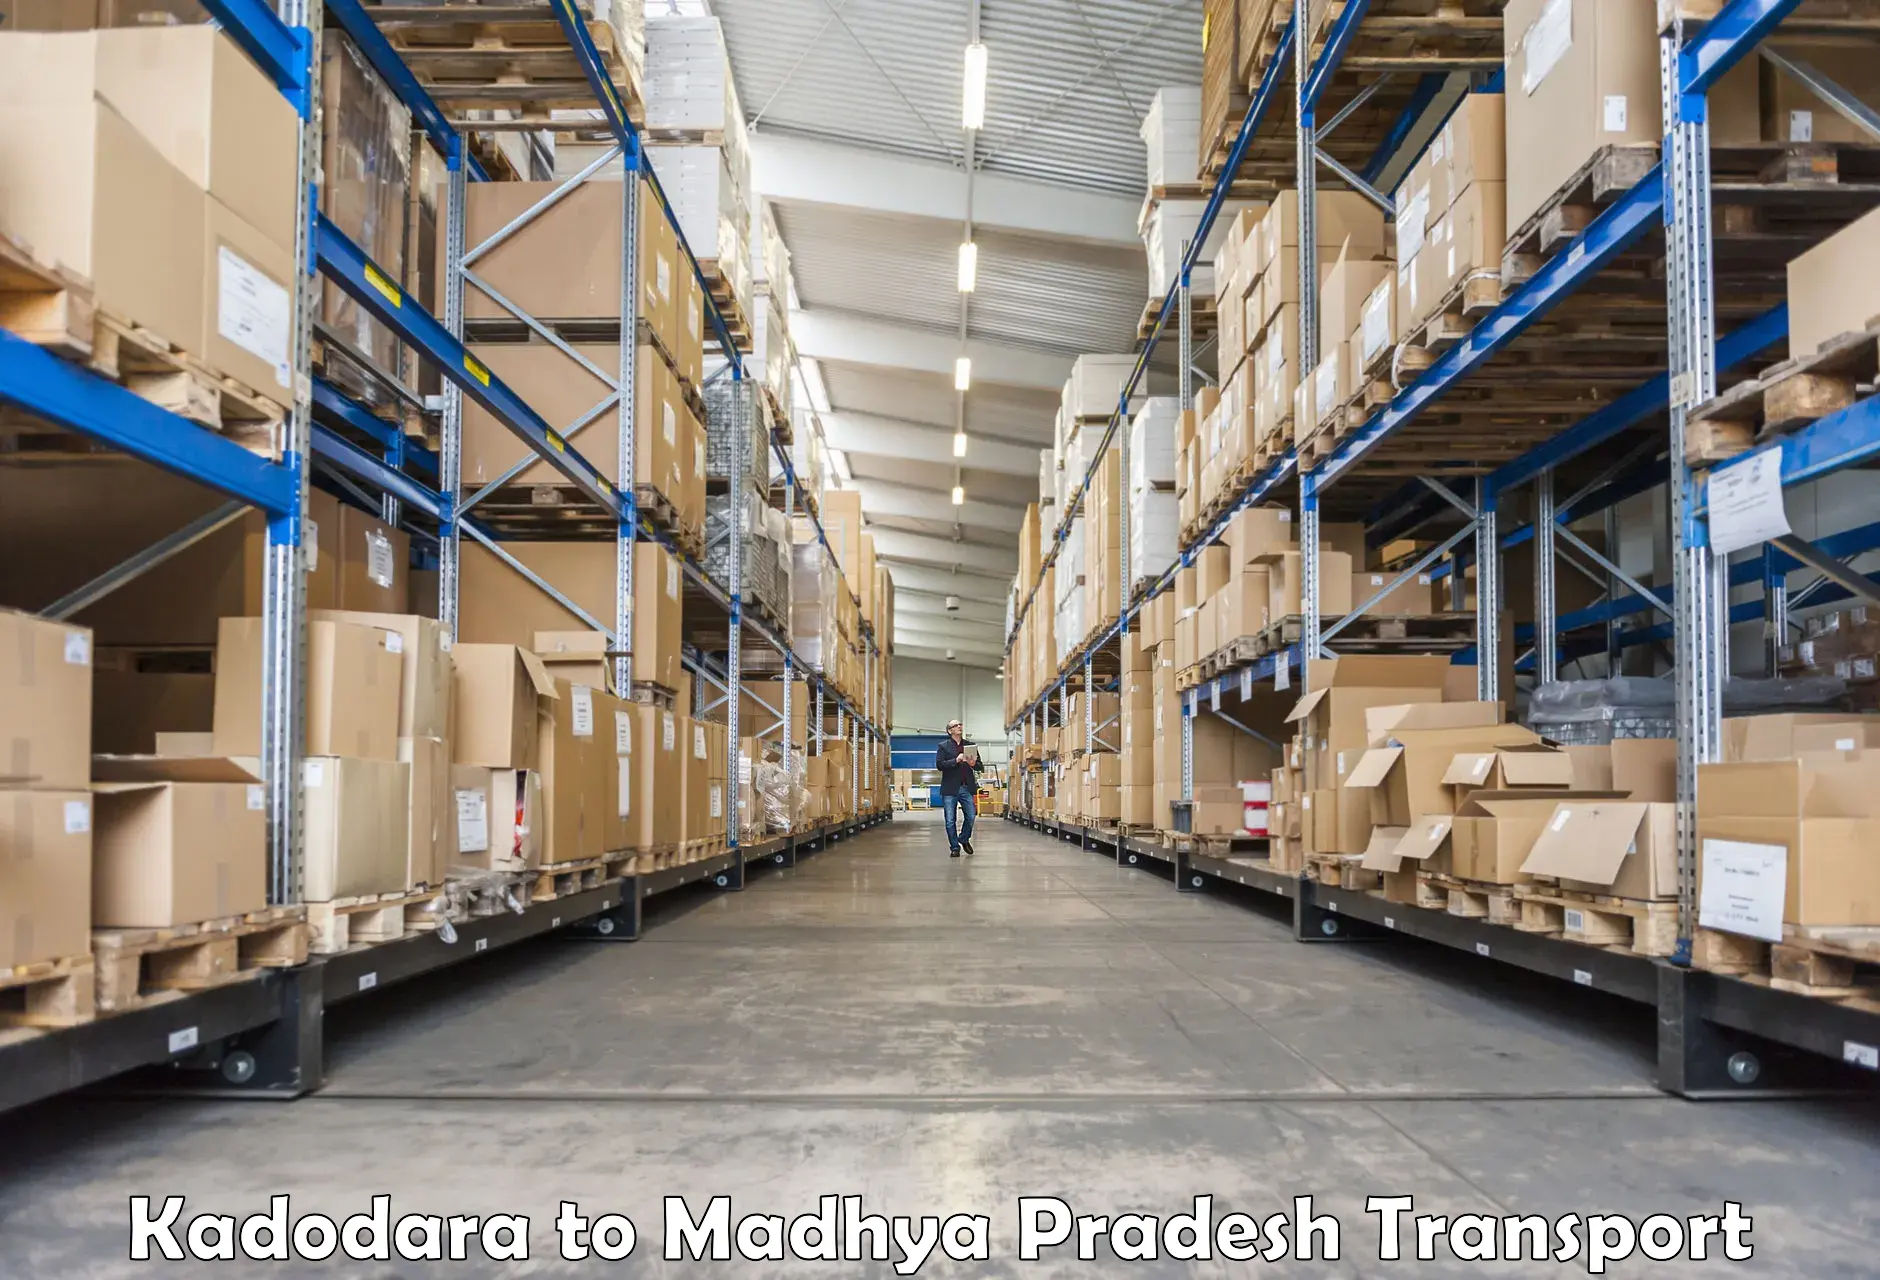 Shipping partner Kadodara to Ranchha